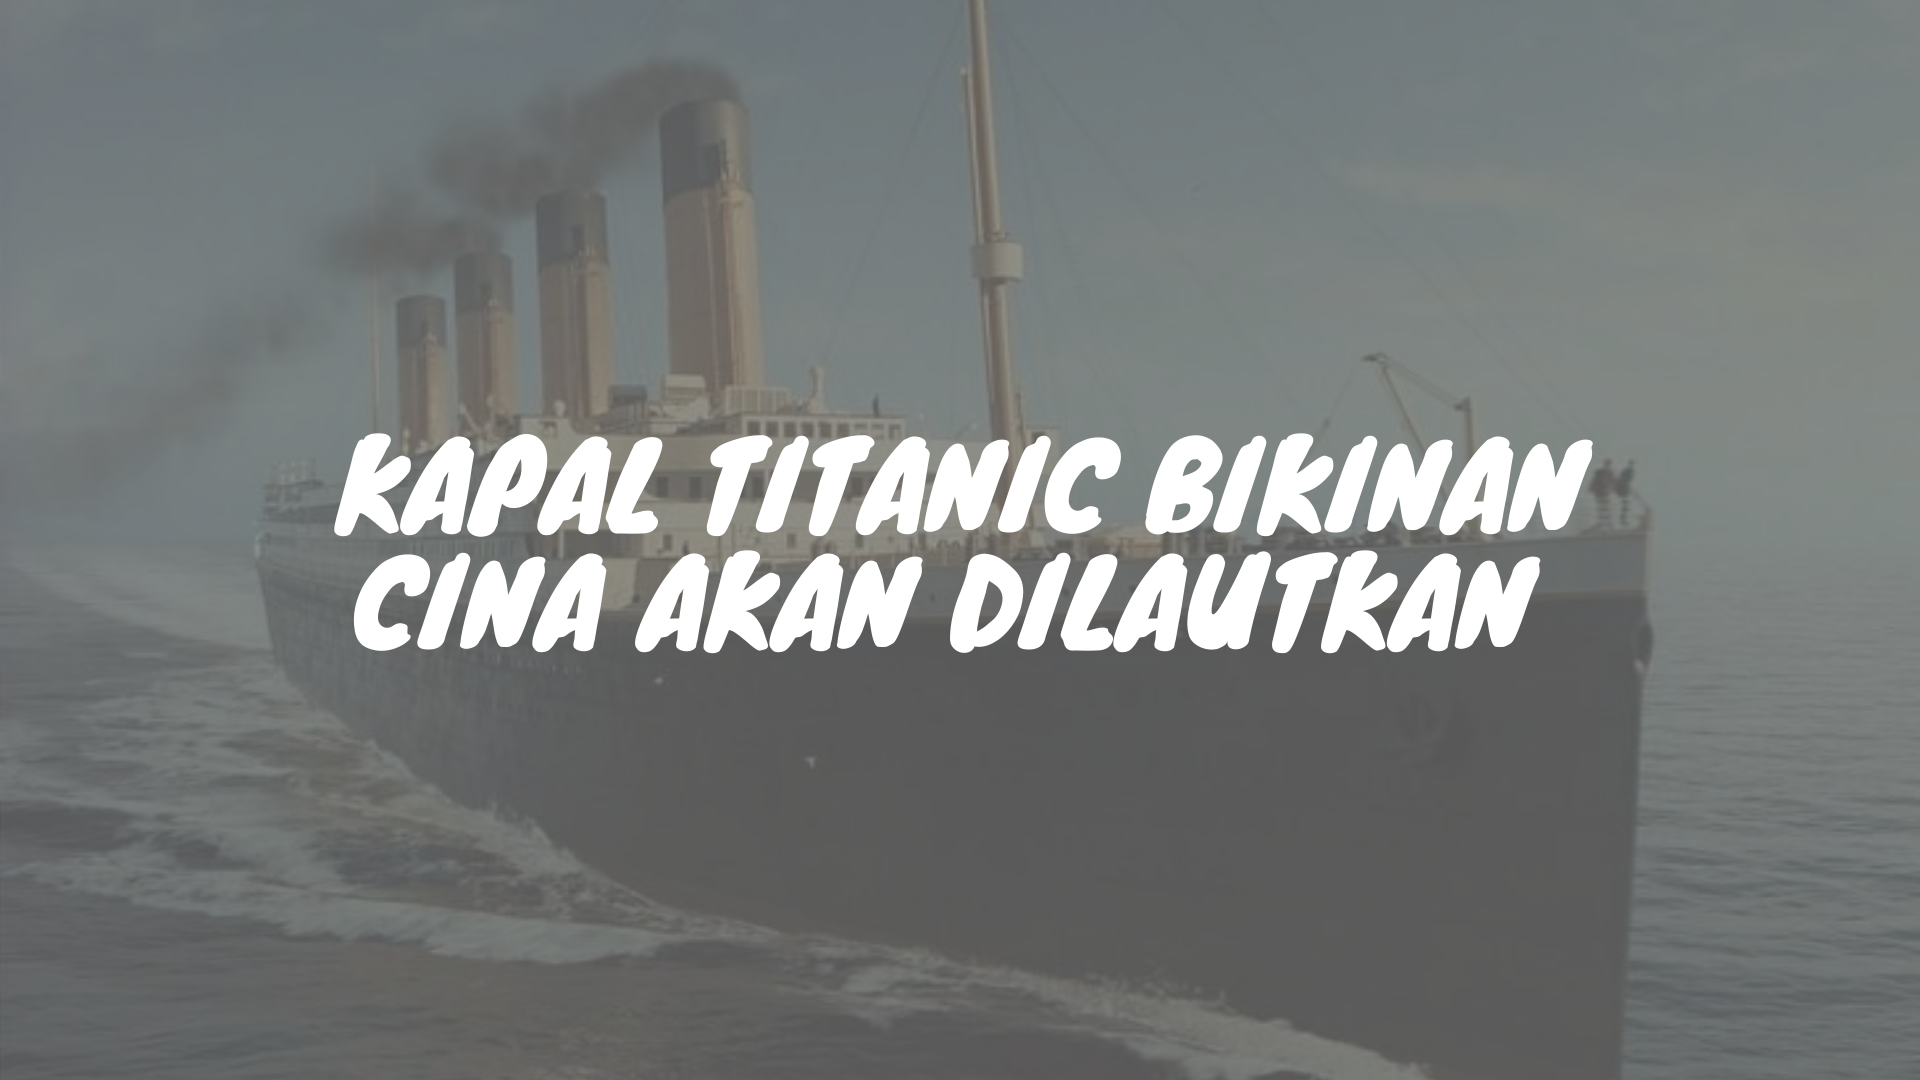 Kapal Titanic buatan Cina akan diliris 2022